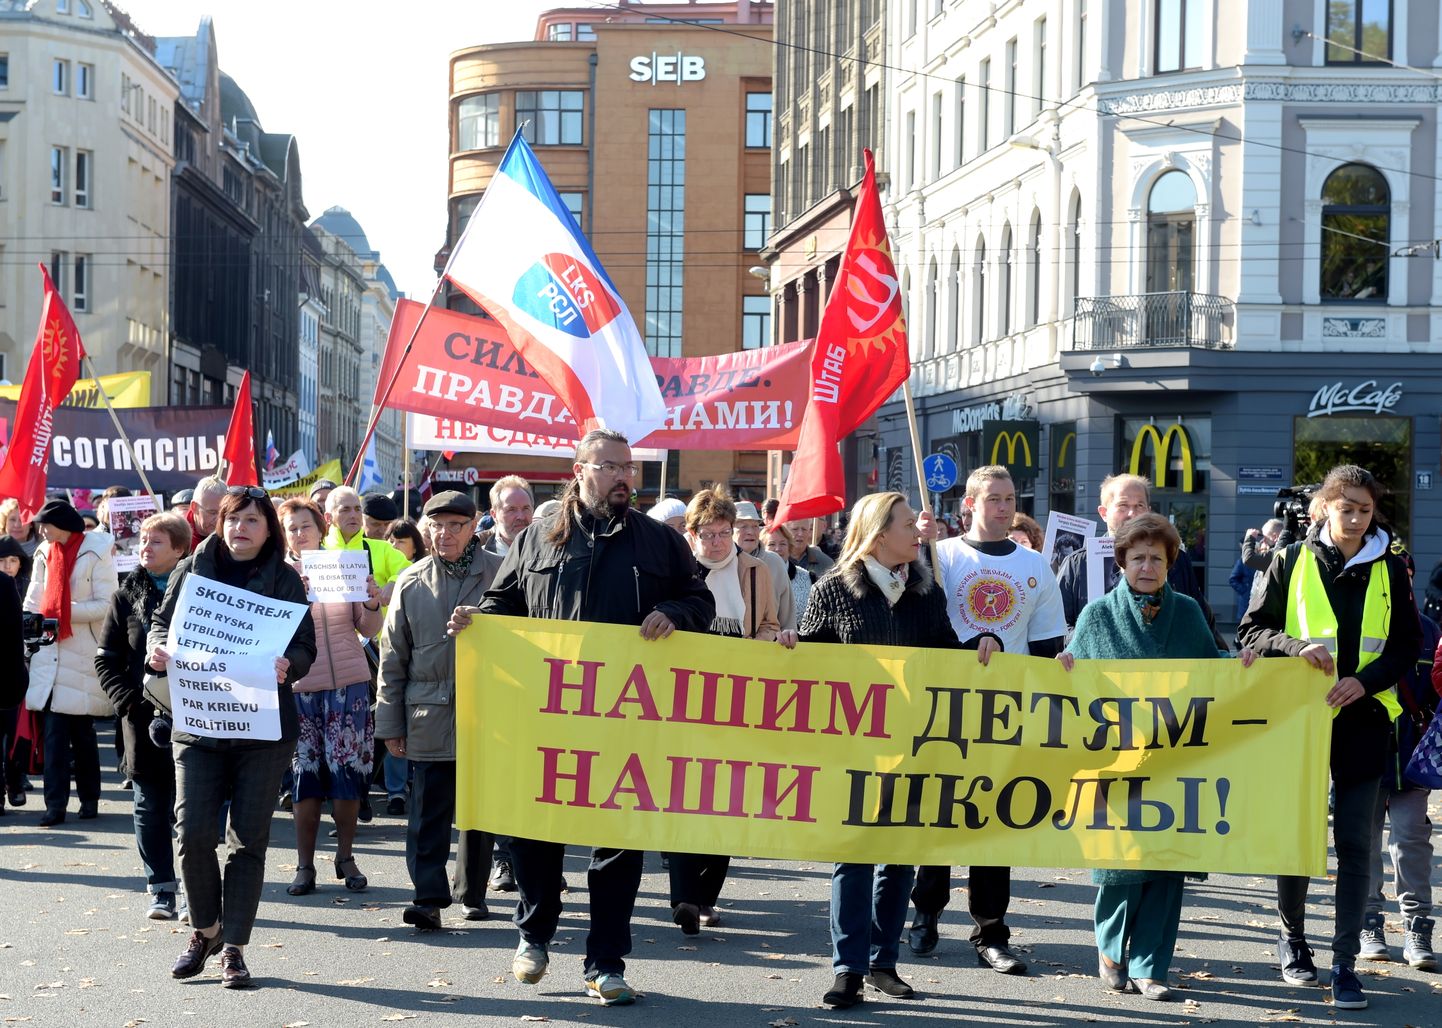 Cilvēki piedalās Latvijas Krievu savienības organizētajā protesta akcijā, kuras mērķis ir aizstāvēt izglītību krievu valodā Latvijā.